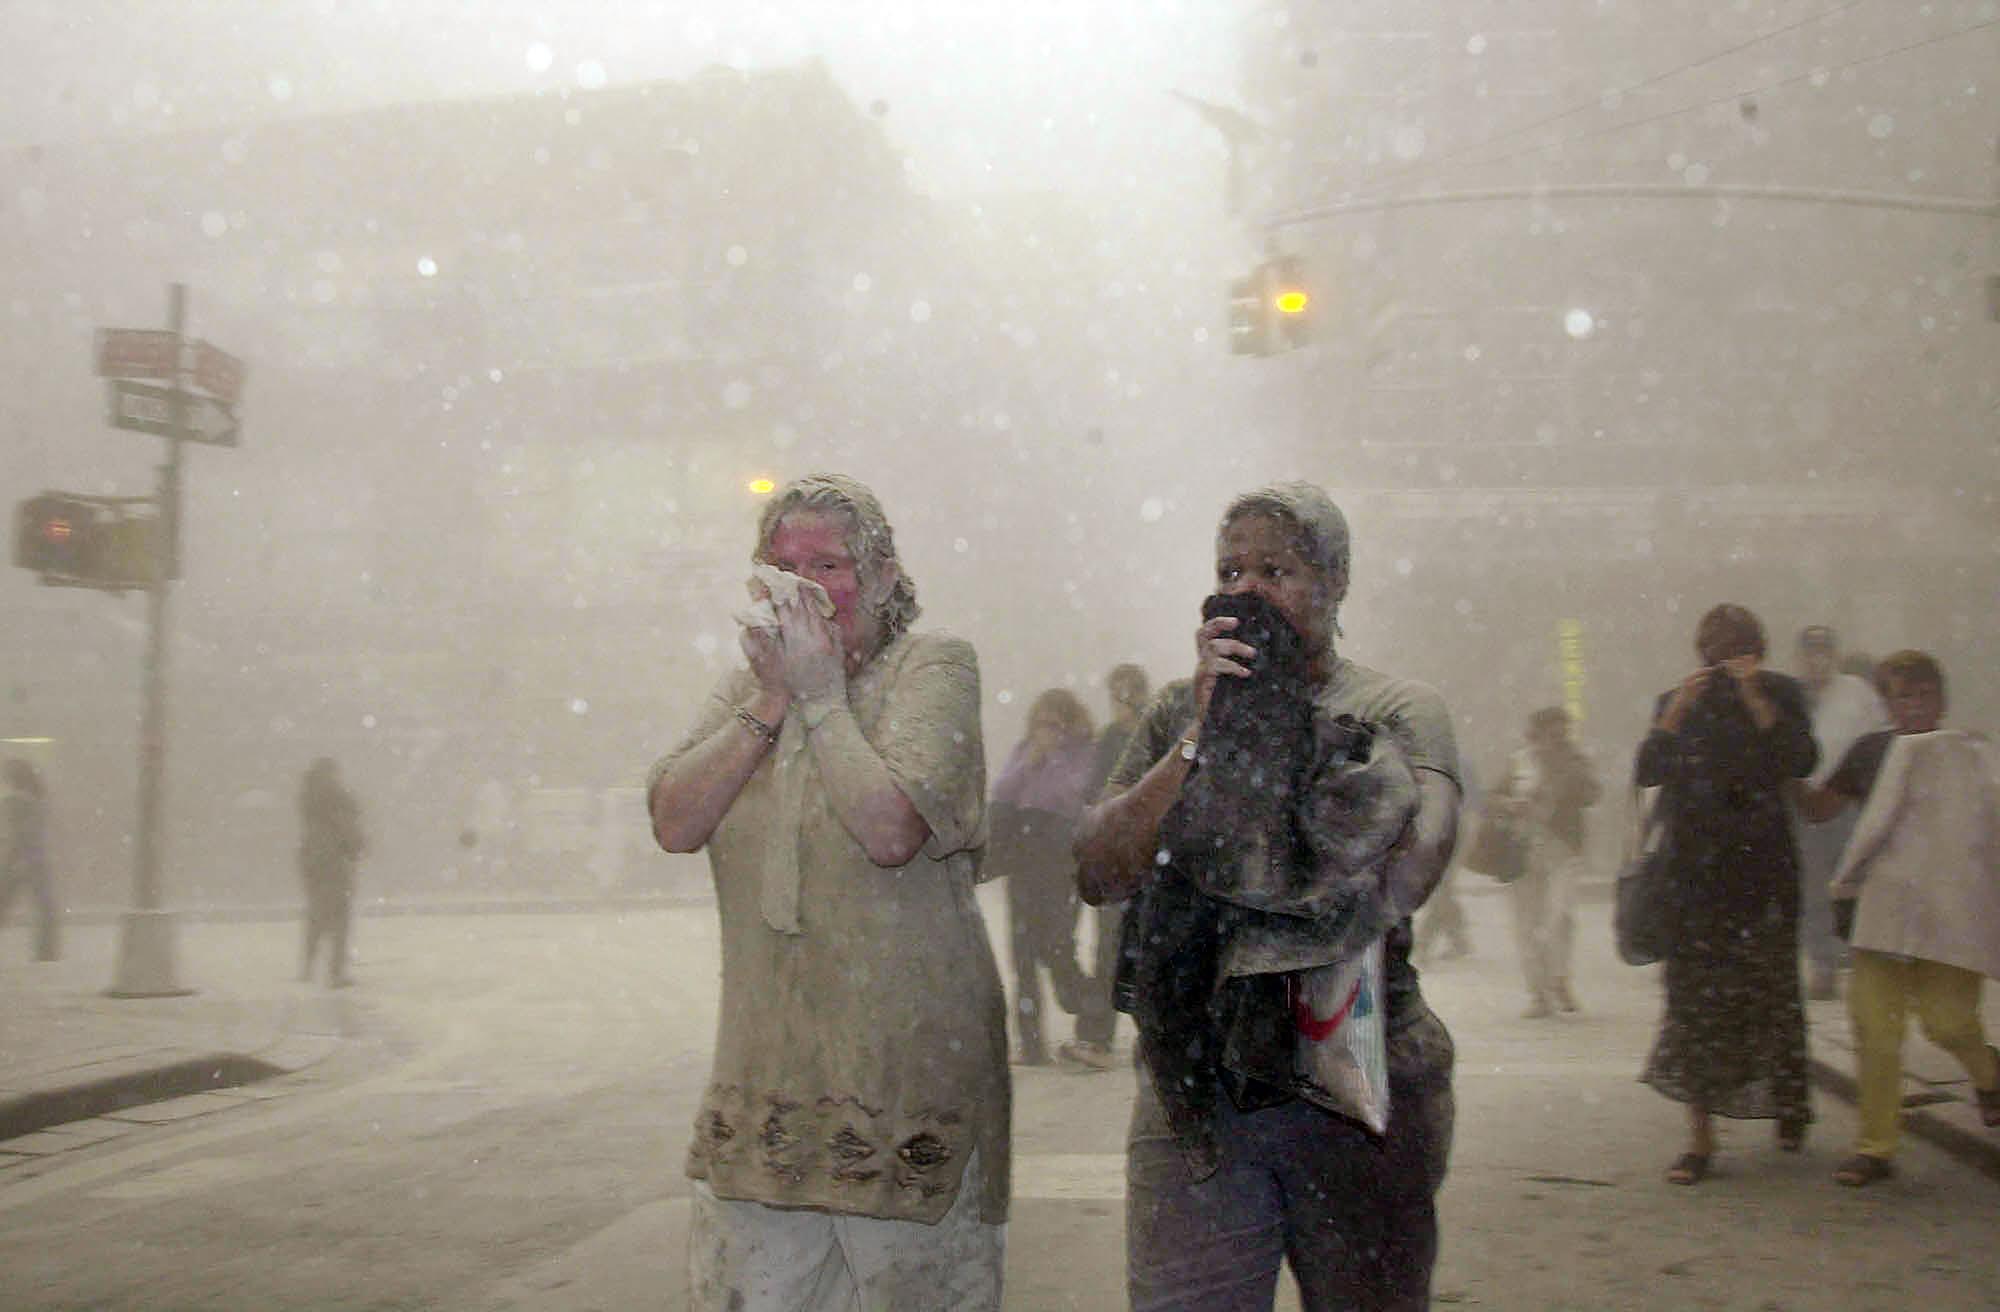 ARCHIVO - En esta foto de archivo del 11 de septiembre de 2001, personas cubiertas de polvo de los edificios derrumbados del World Trade Center, caminan por el área, en Nueva York. Dos décadas después del colapso de las torres gemelas, la gente sigue denunciando enfermedades que podrían estar relacionadas con los ataques. (Foto AP / Suzanne Plunkett, archivo)